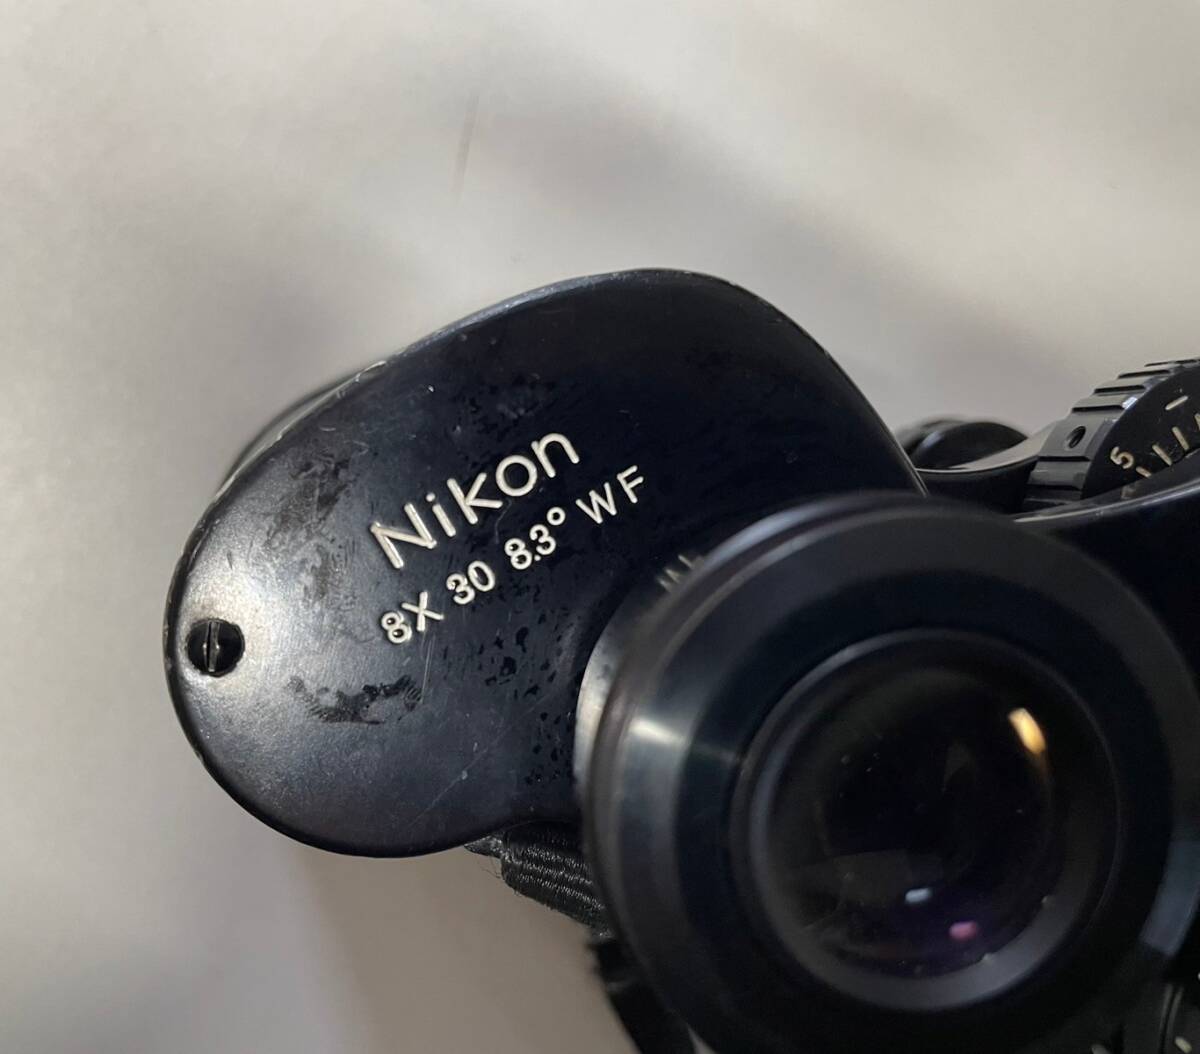  secondhand goods Nikon Nikon 8×30 8.3° WF binoculars case attaching 